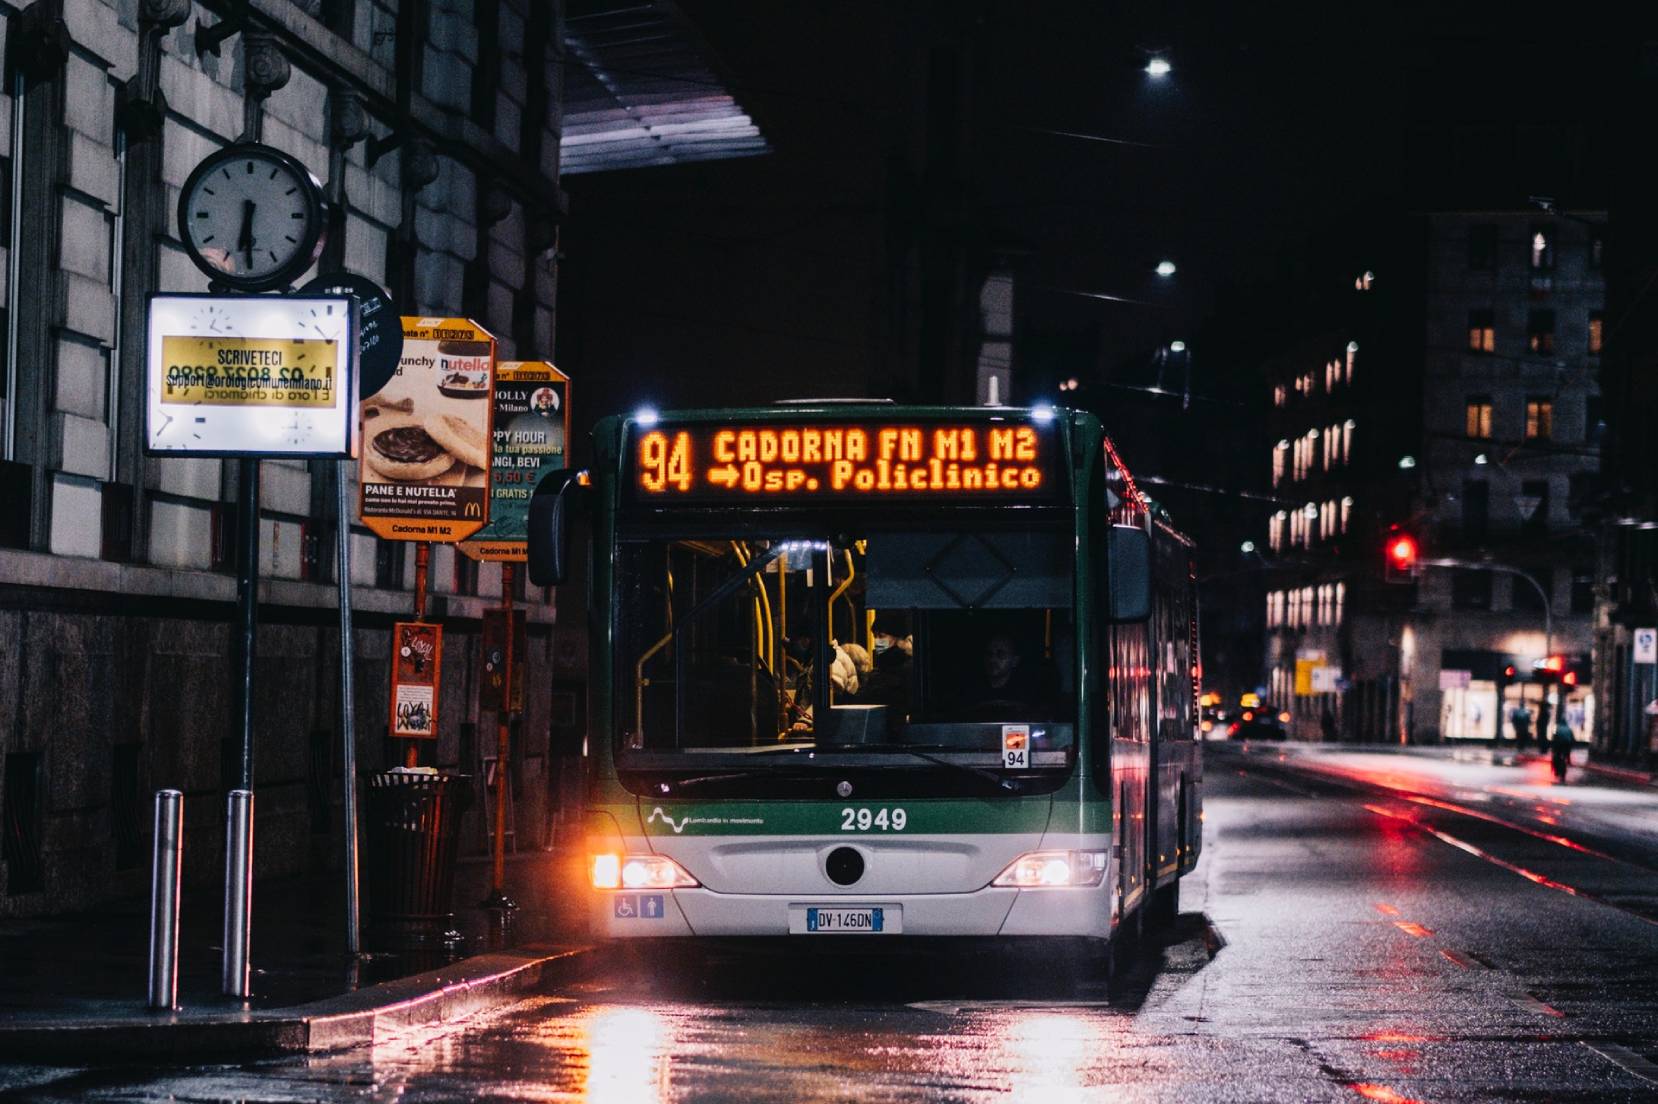 Autobus in sosta, Milano, notte